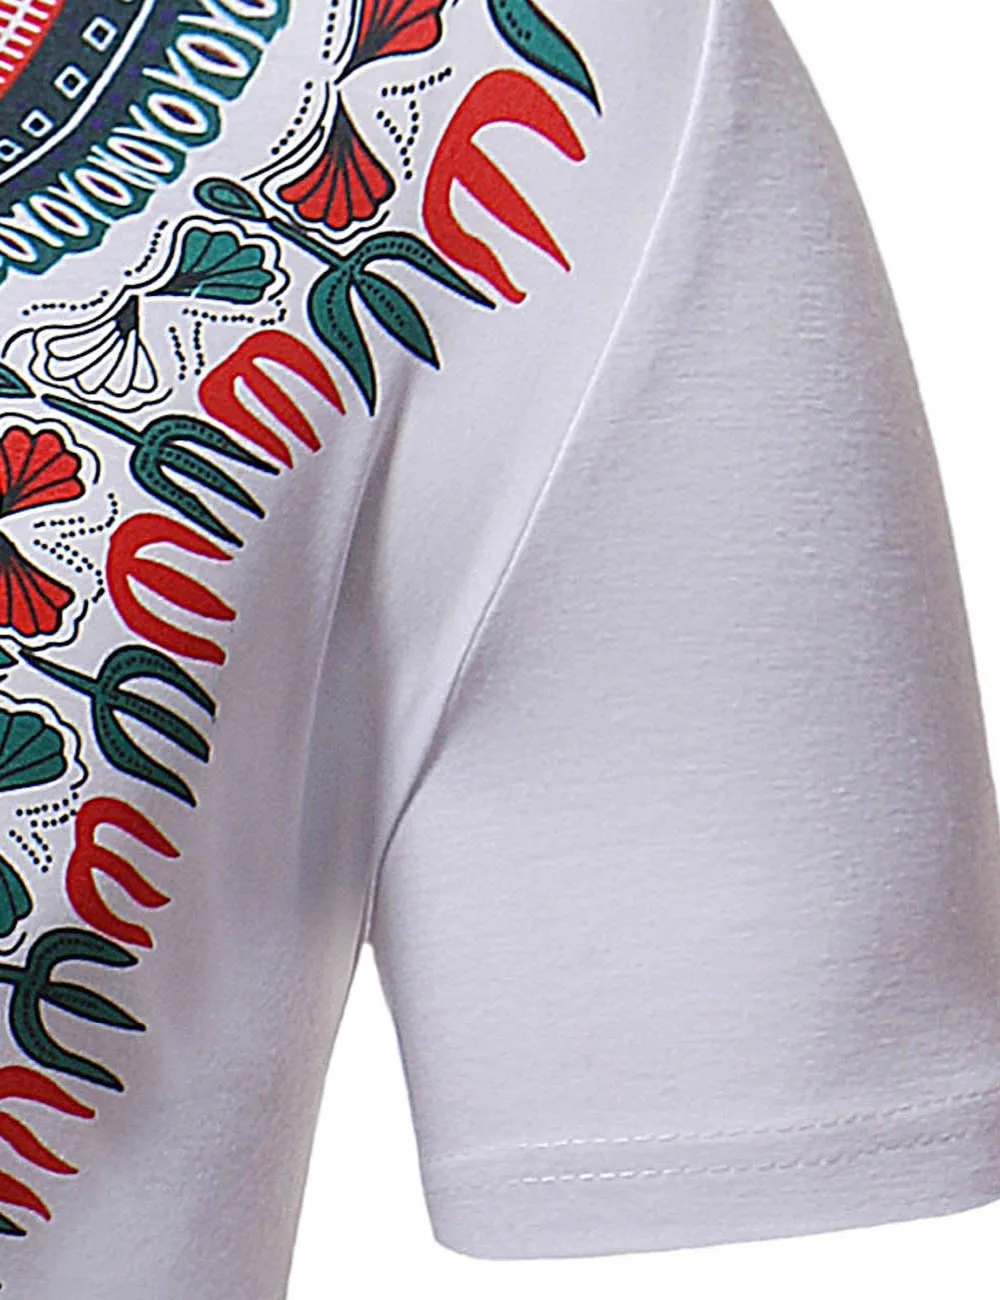 Fadzeco 2019 рубашка в африканском стиле для мужчин с этническим принтом короткий рукав Футболка поло воротник модные повседневные мужские топы